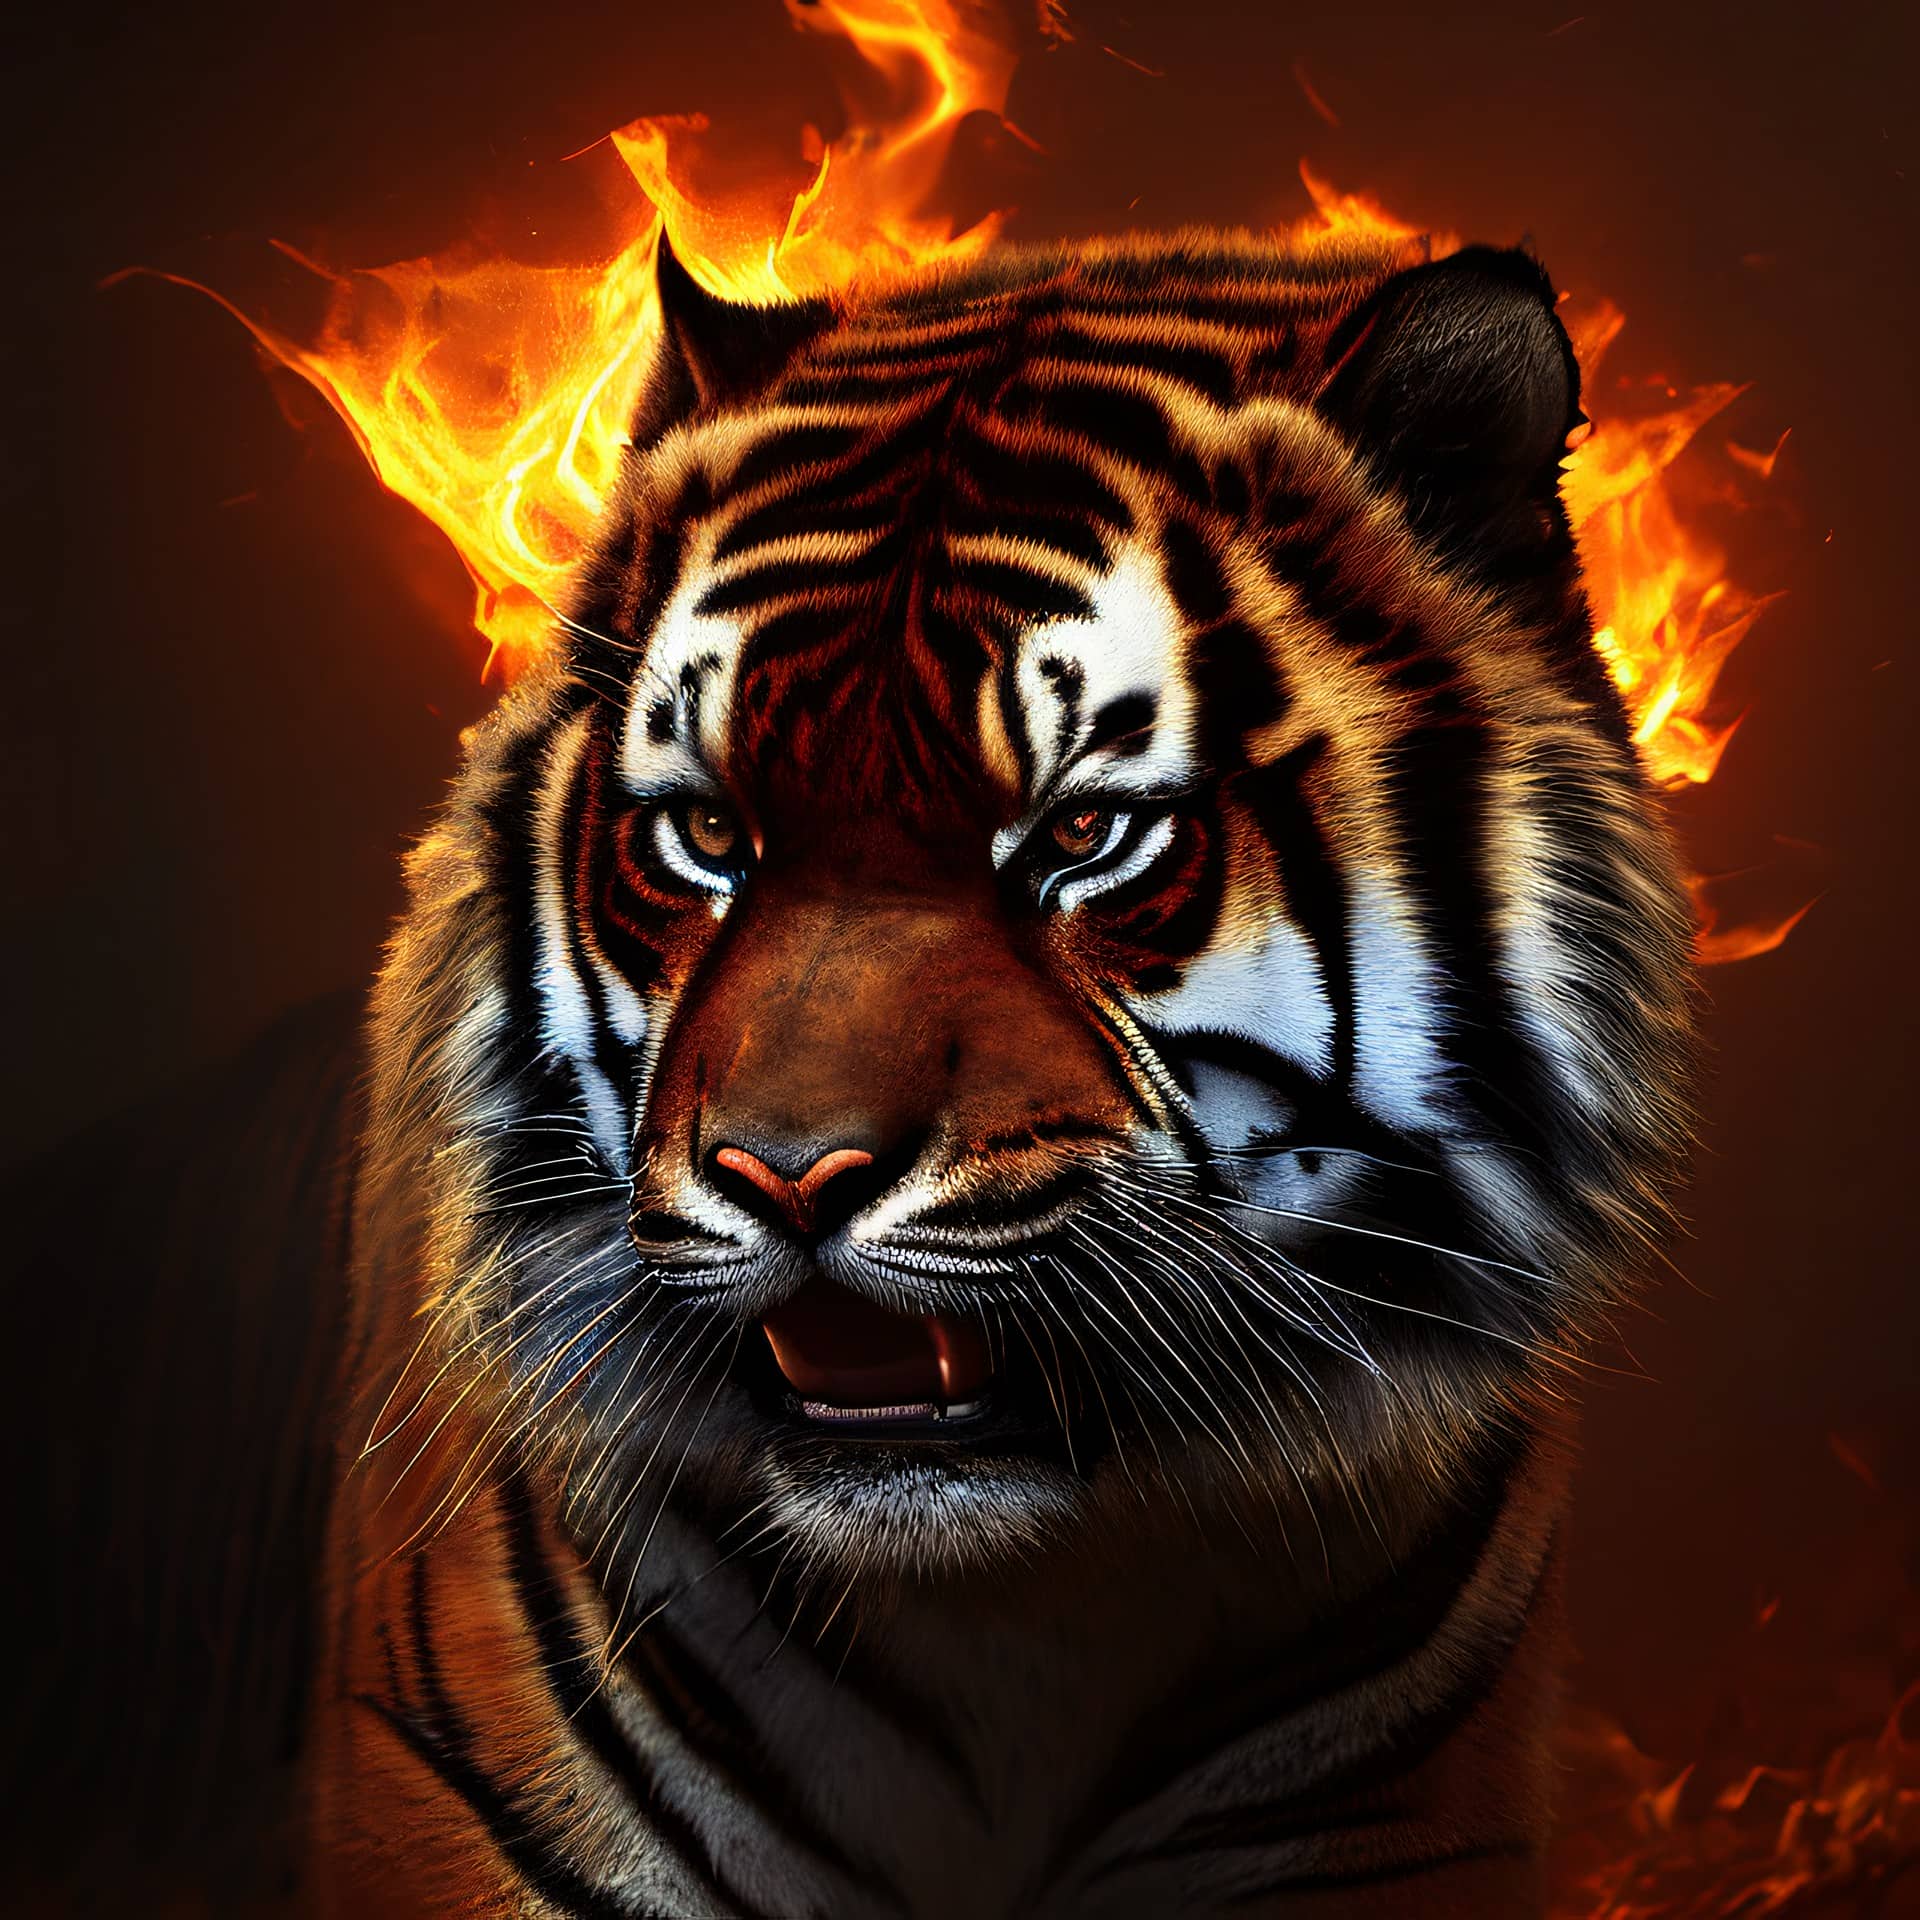 Картина “Огненный тигр – 1”